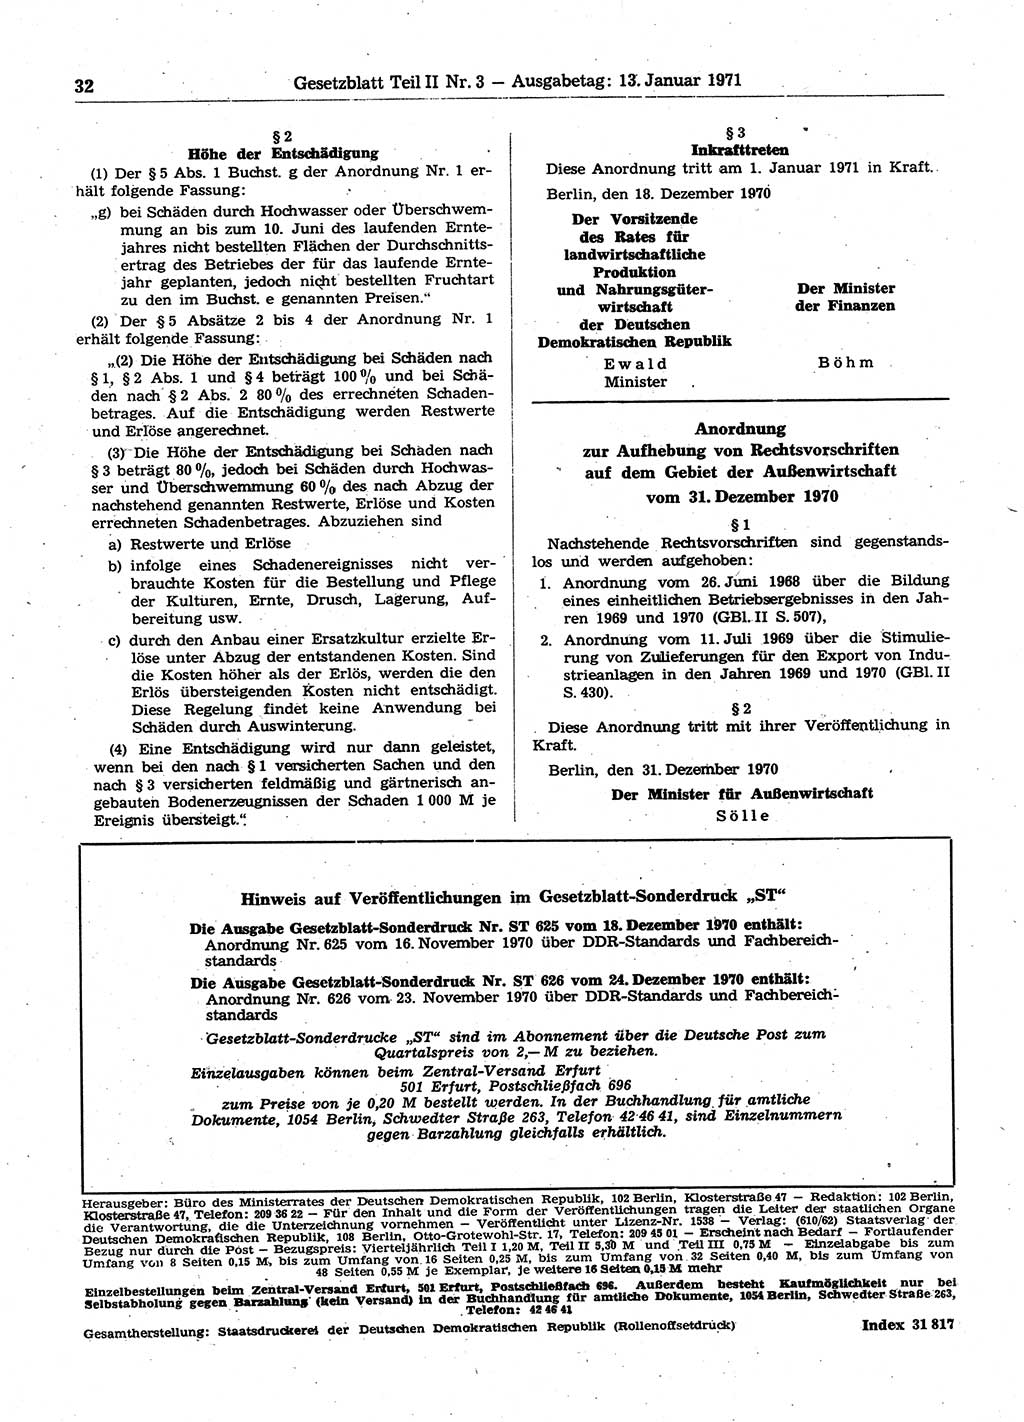 Gesetzblatt (GBl.) der Deutschen Demokratischen Republik (DDR) Teil ⅠⅠ 1971, Seite 32 (GBl. DDR ⅠⅠ 1971, S. 32)